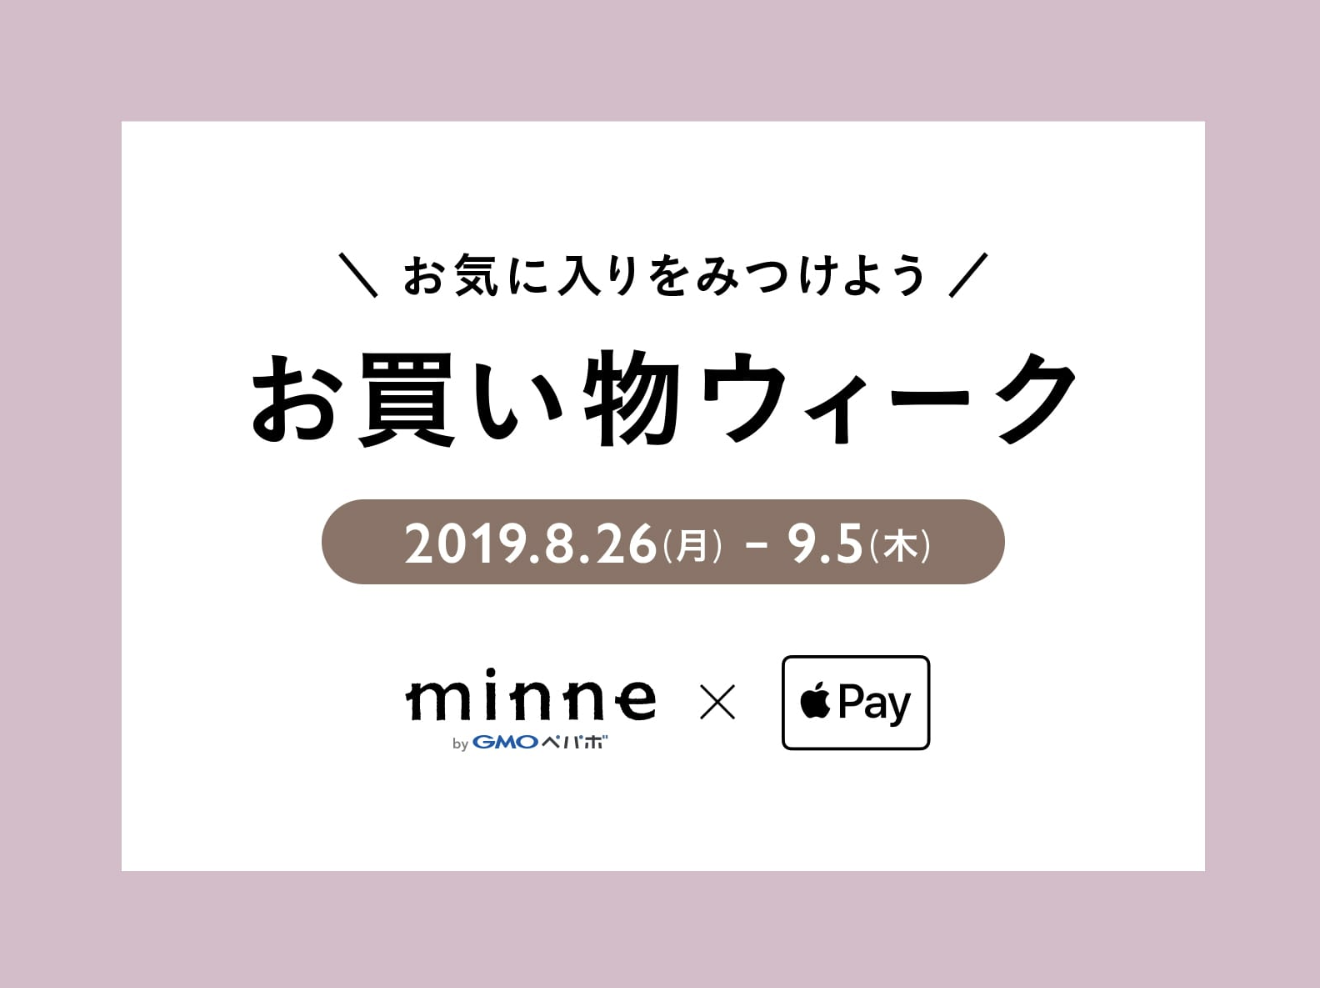 minne、｢Apple Pay｣利用で300円割引になるキャンペーンを開催中